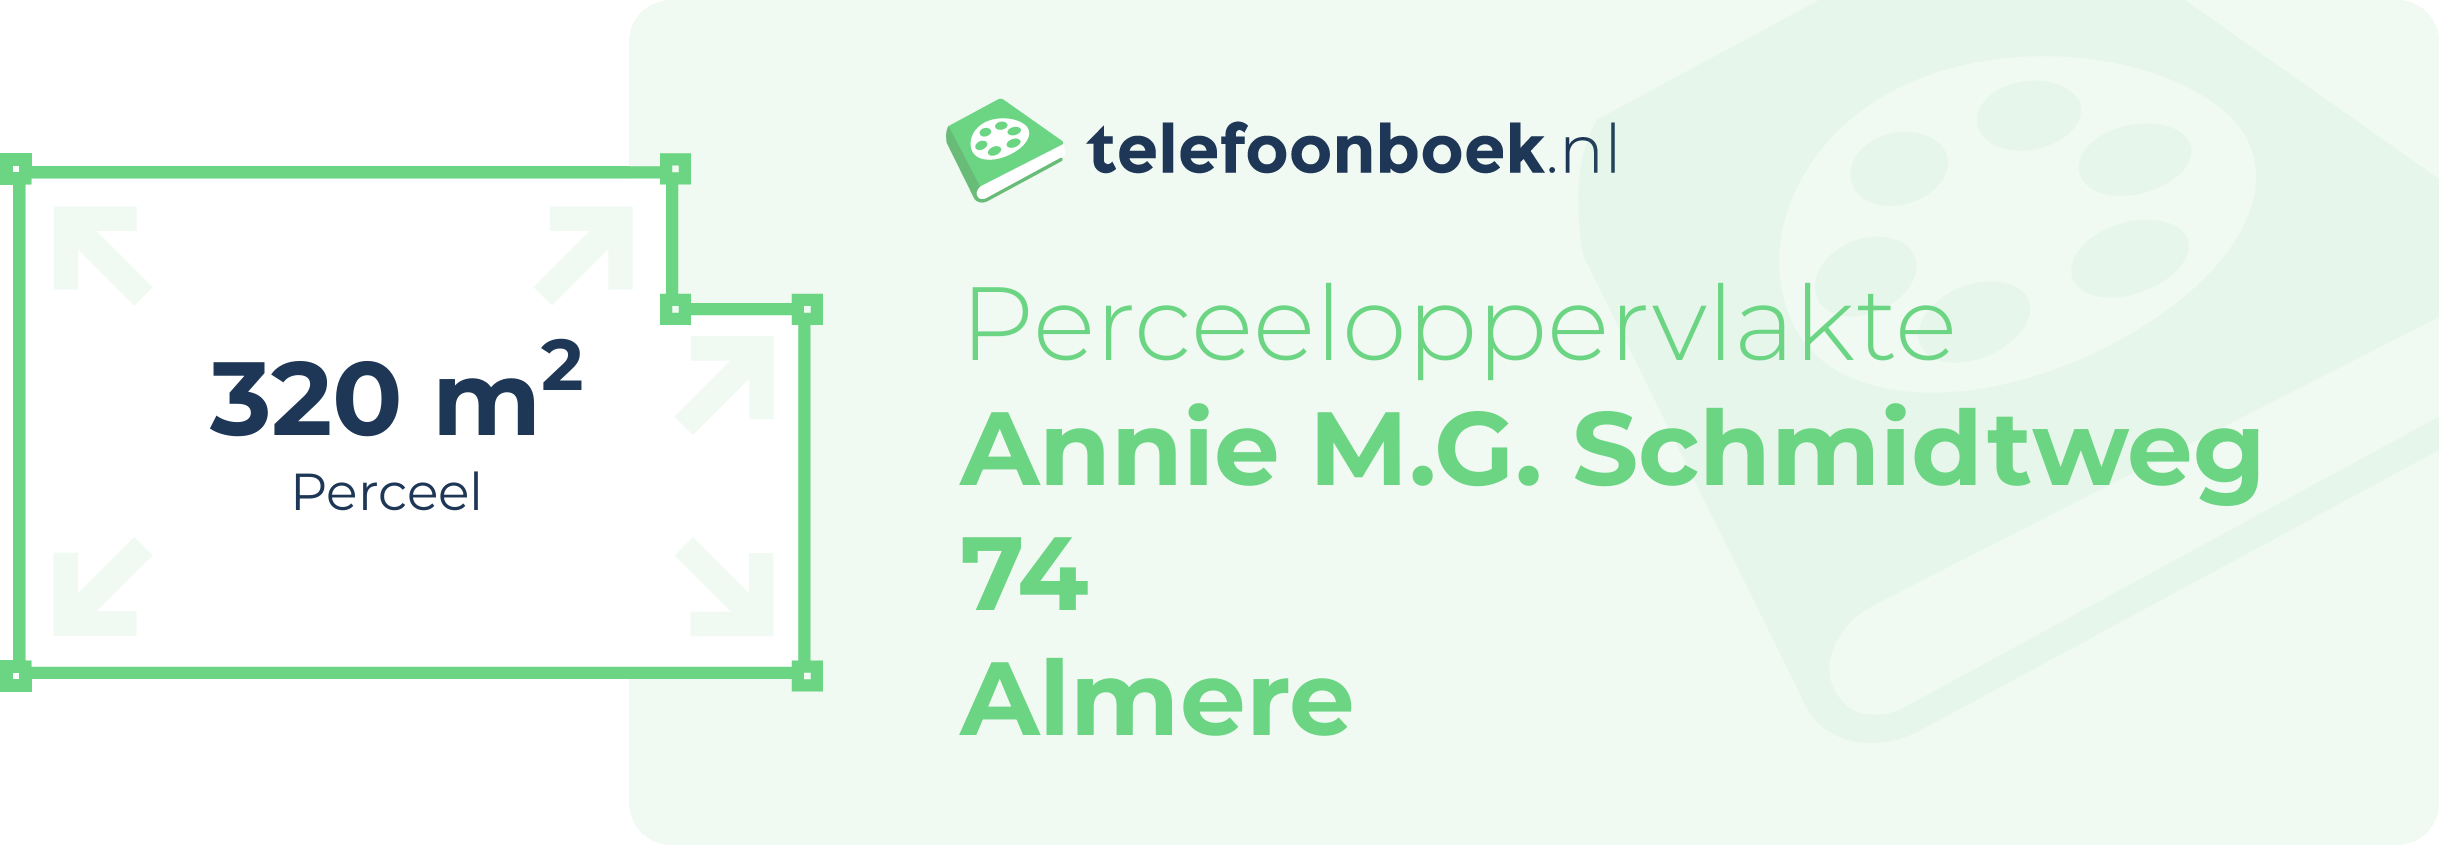 Perceeloppervlakte Annie M.G. Schmidtweg 74 Almere